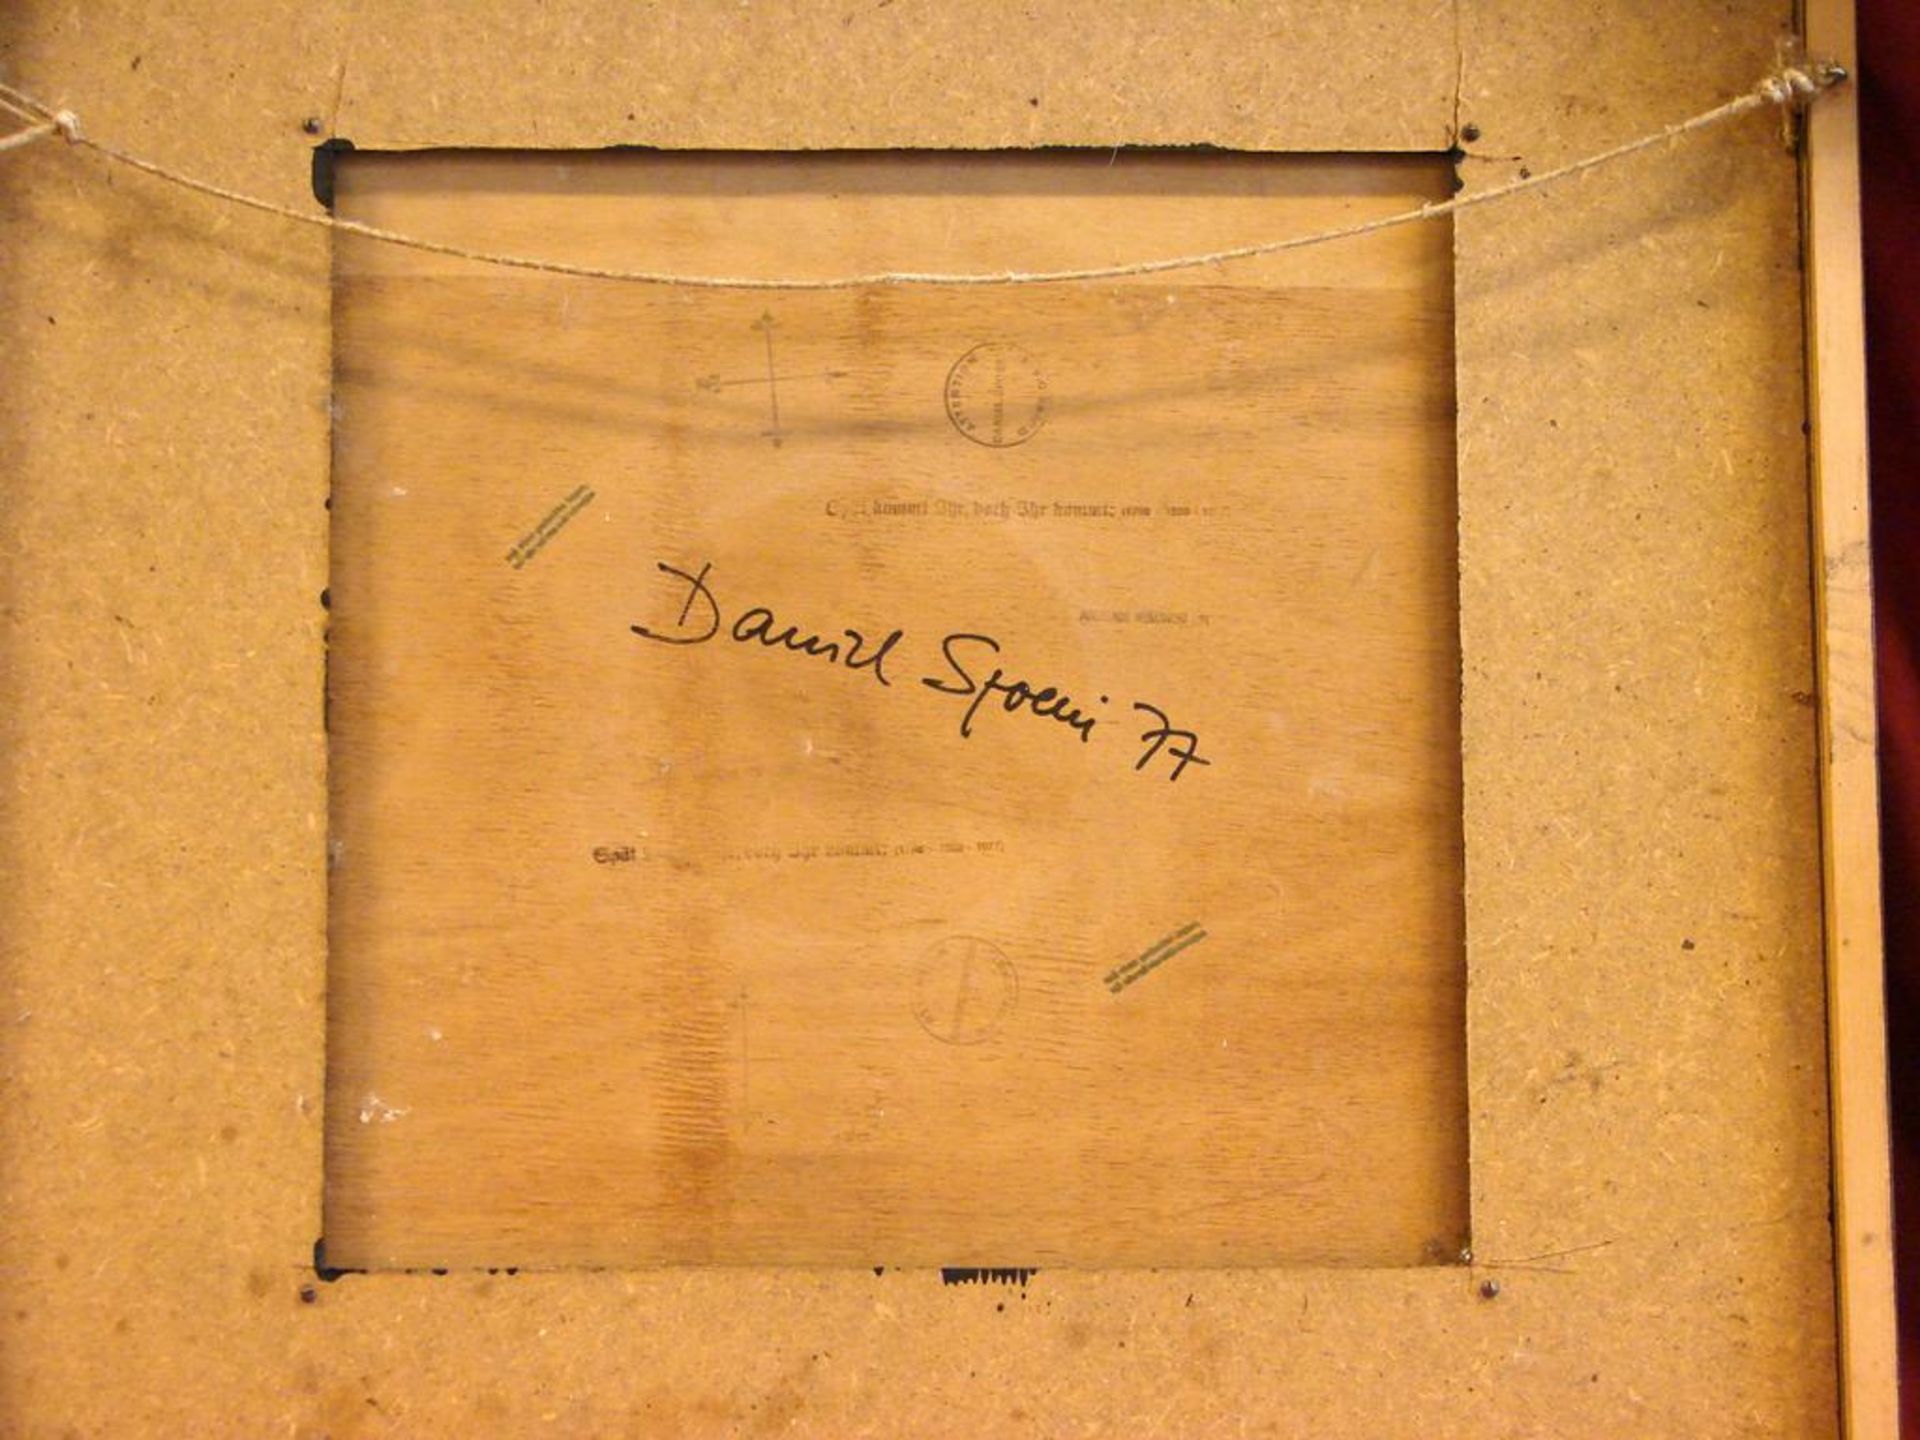 DANIEL SPOERI, Modern, Textilarbeit, dat.' 77 , bezeichnet, ca. 65x65 cm, Kein Postversand möglich - Image 3 of 3